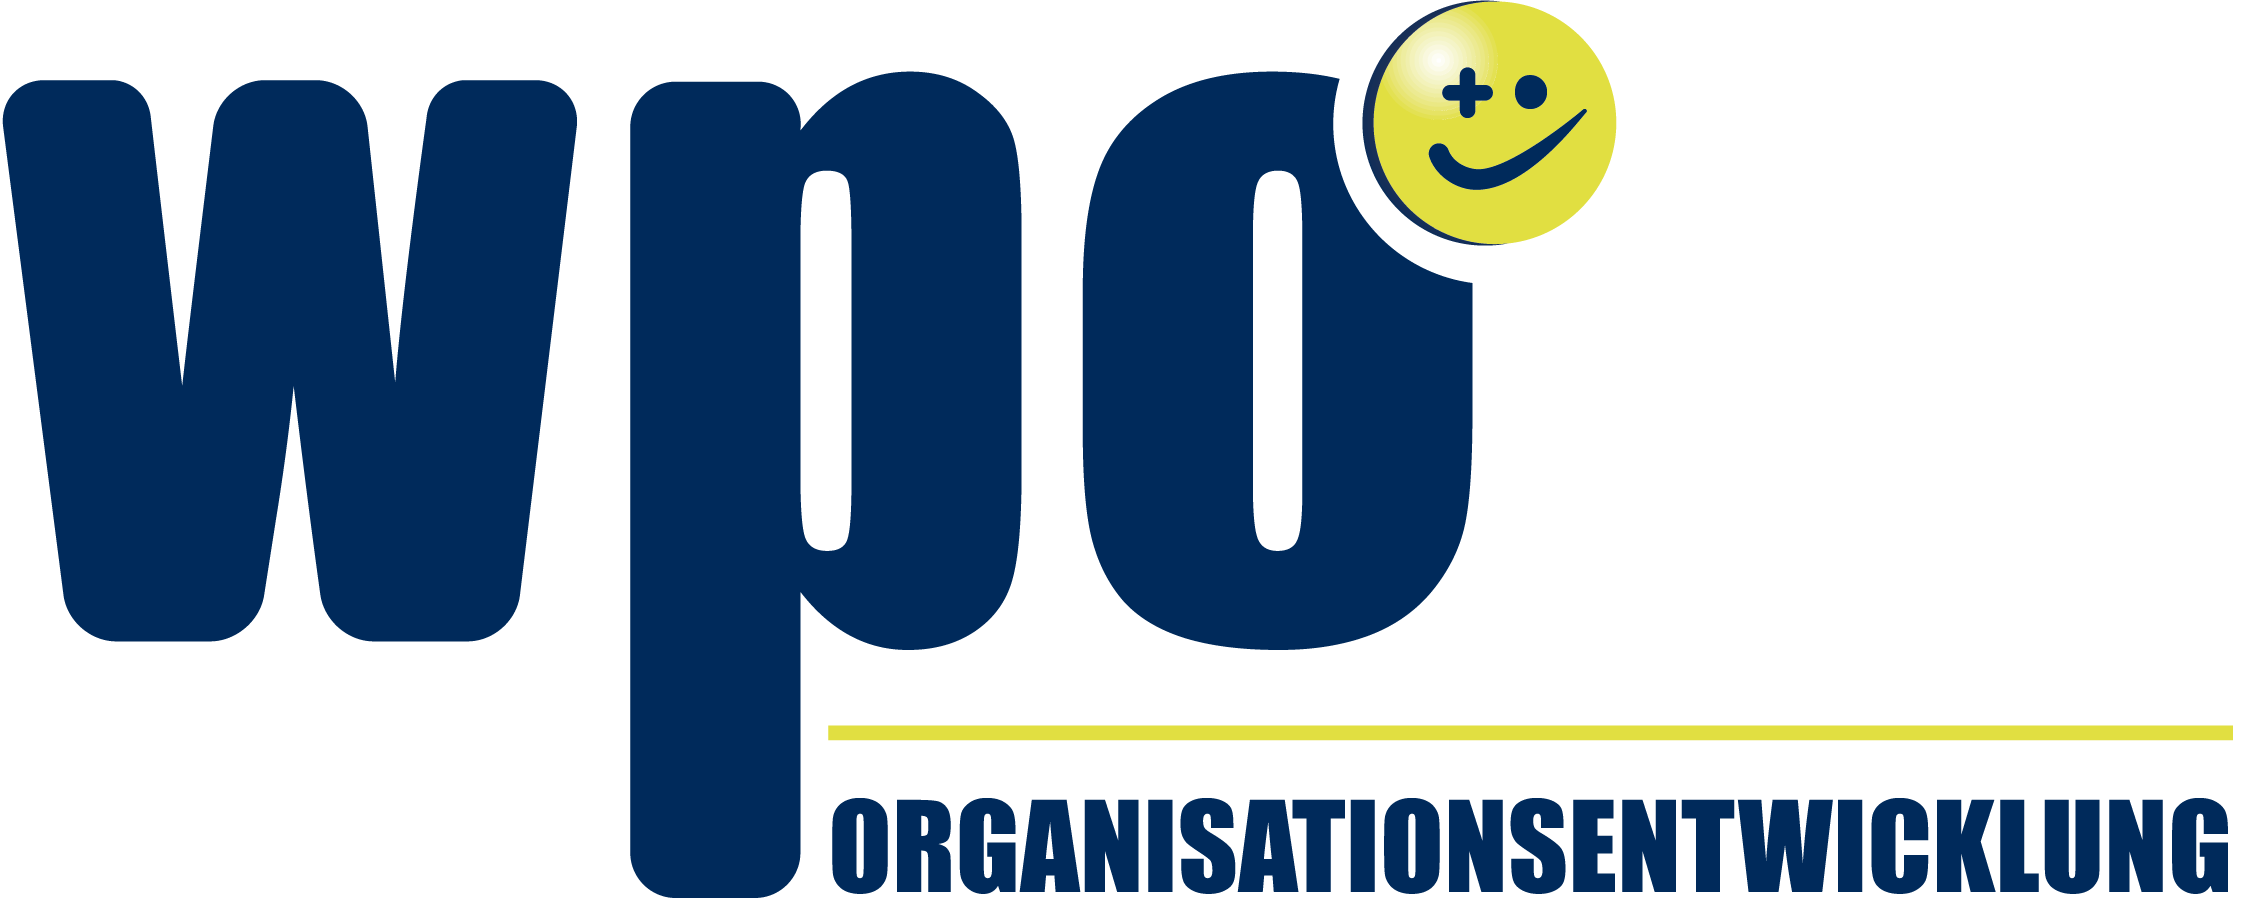 WPO Wolfgang Pölz logo